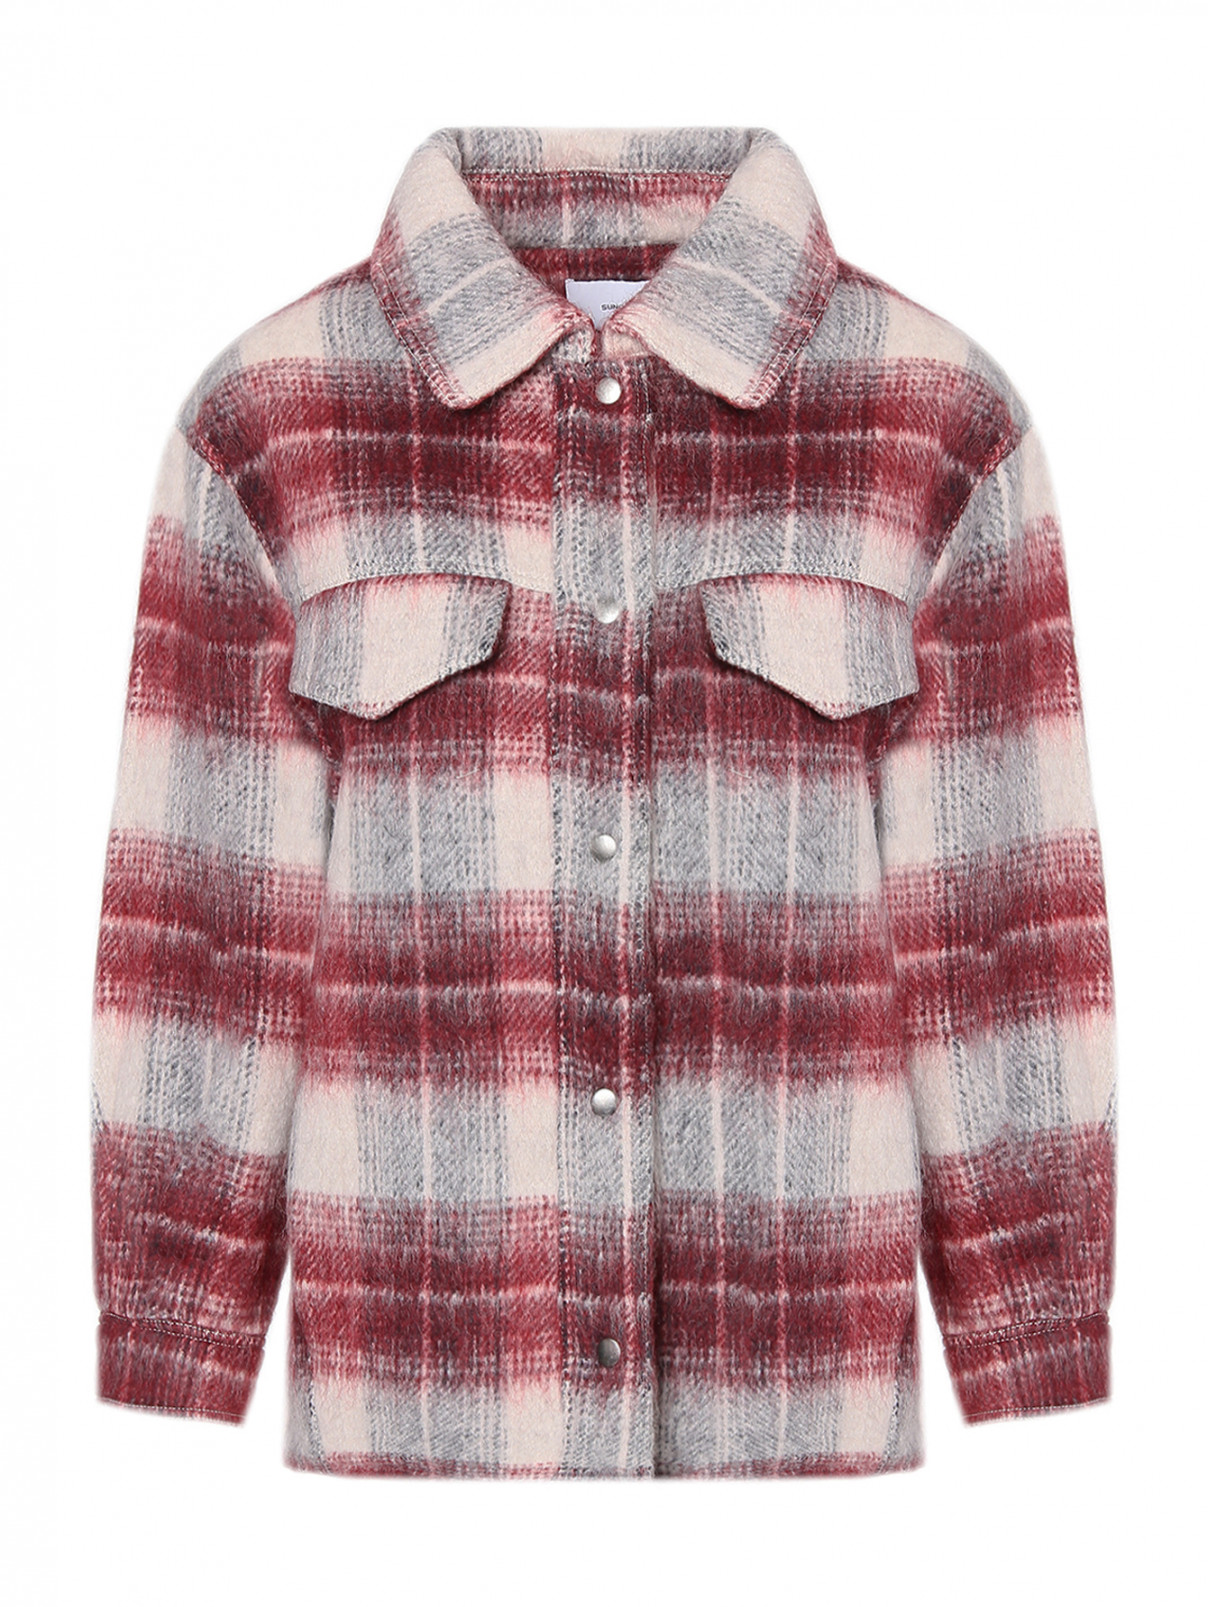 Пальто-рубашка укороченое из шерсти в клетку Suncoo  –  Общий вид  – Цвет:  Мультиколор